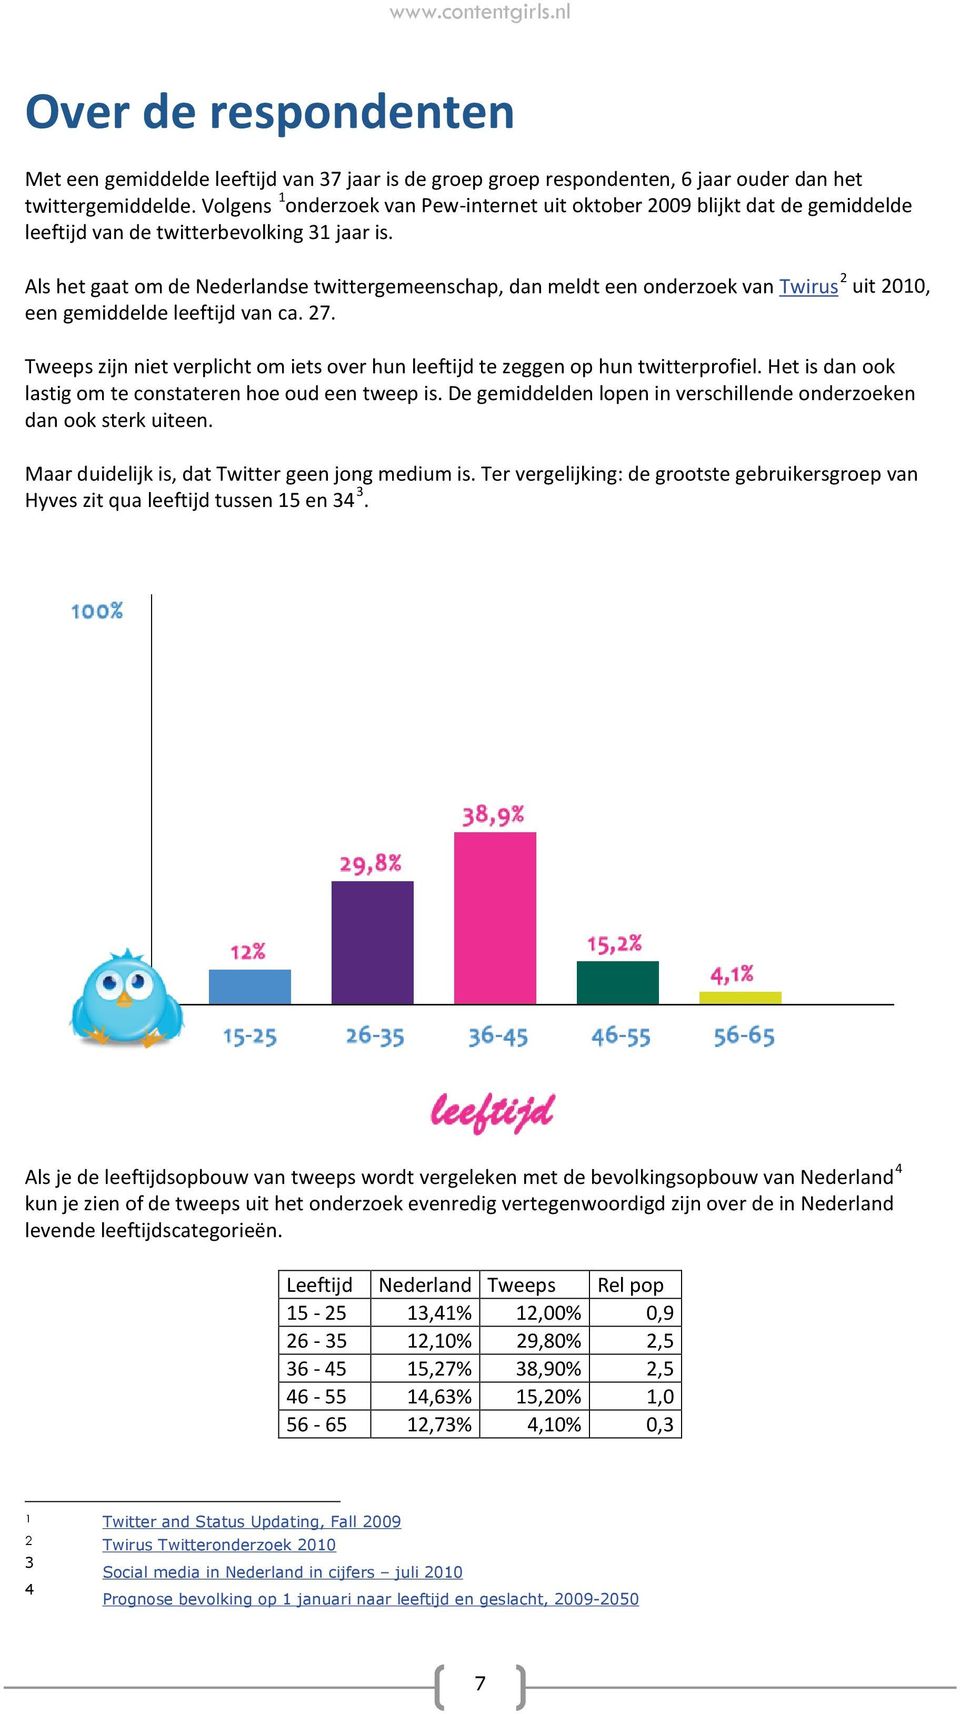 Als het gaat om de Nederlandse twittergemeenschap, dan meldt een onderzoek van Twirus 2 uit 2010, een gemiddelde leeftijd van ca. 27.